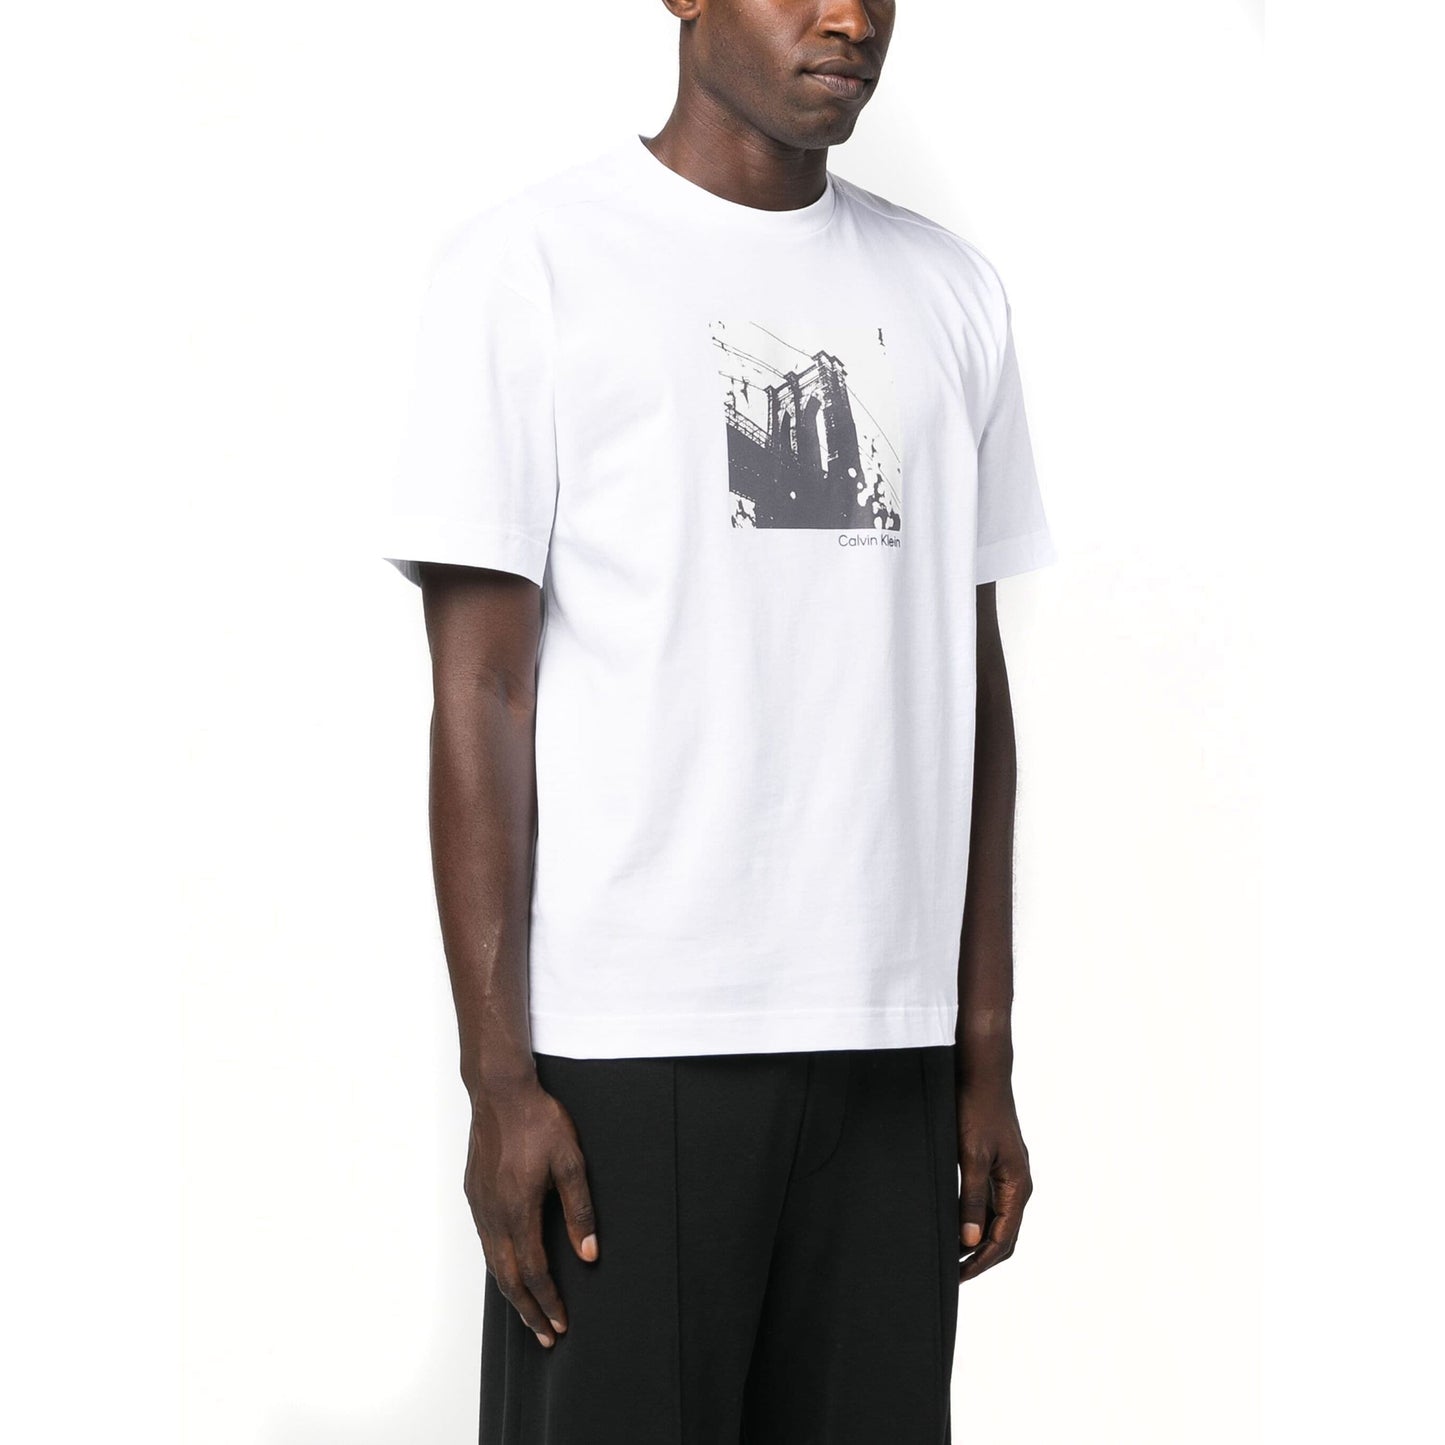 CALVIN KLEIN vyriški balti marškinėliai Photo print t-shirt